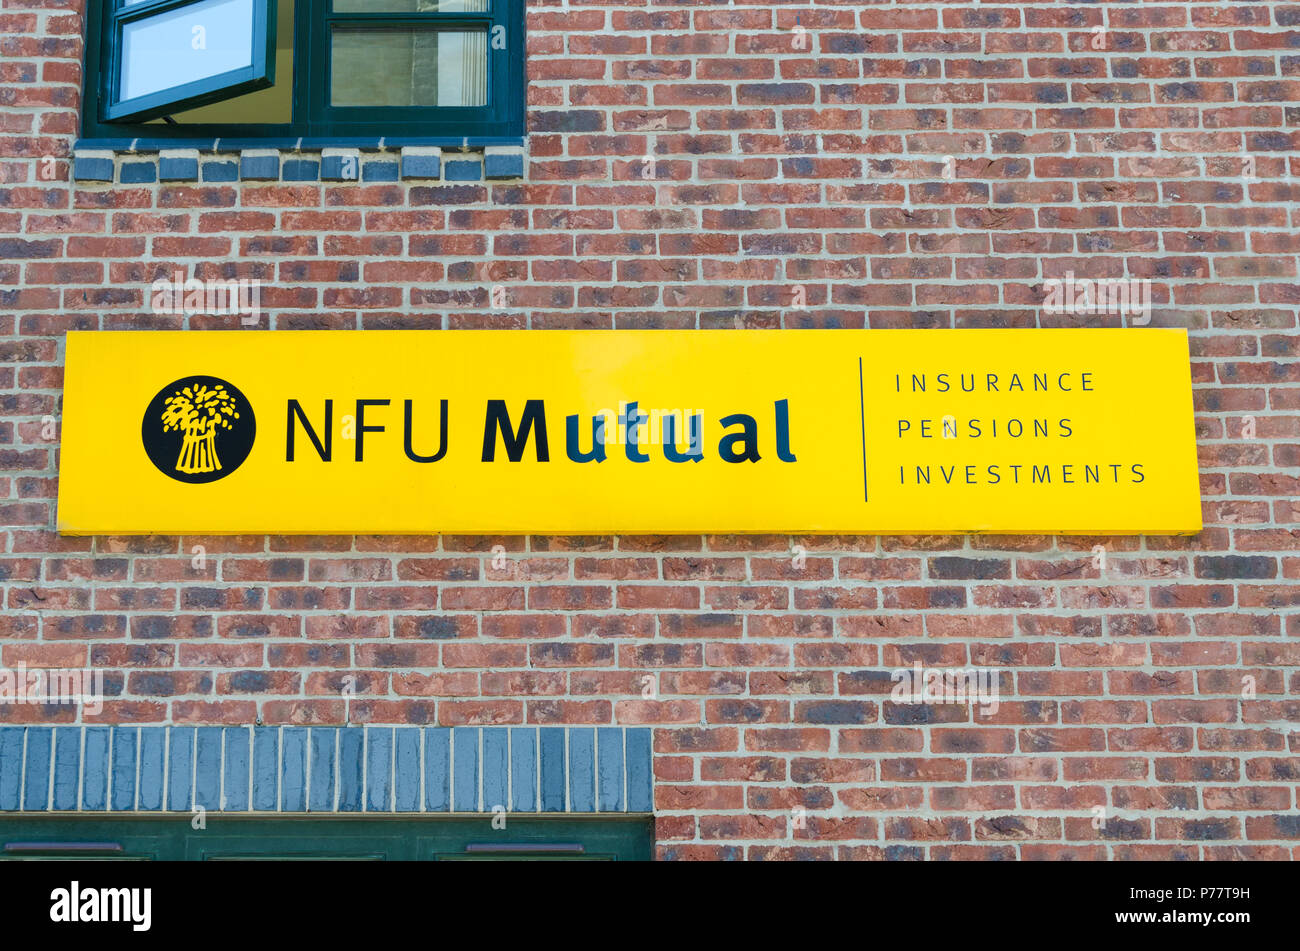 La NFU Mutual signer au bureau local d'Uttoxeter, Staffordshire. Fournit de l'UGN,assurance et conseil en placement pour les personnes impliquées dans l'agriculture Banque D'Images